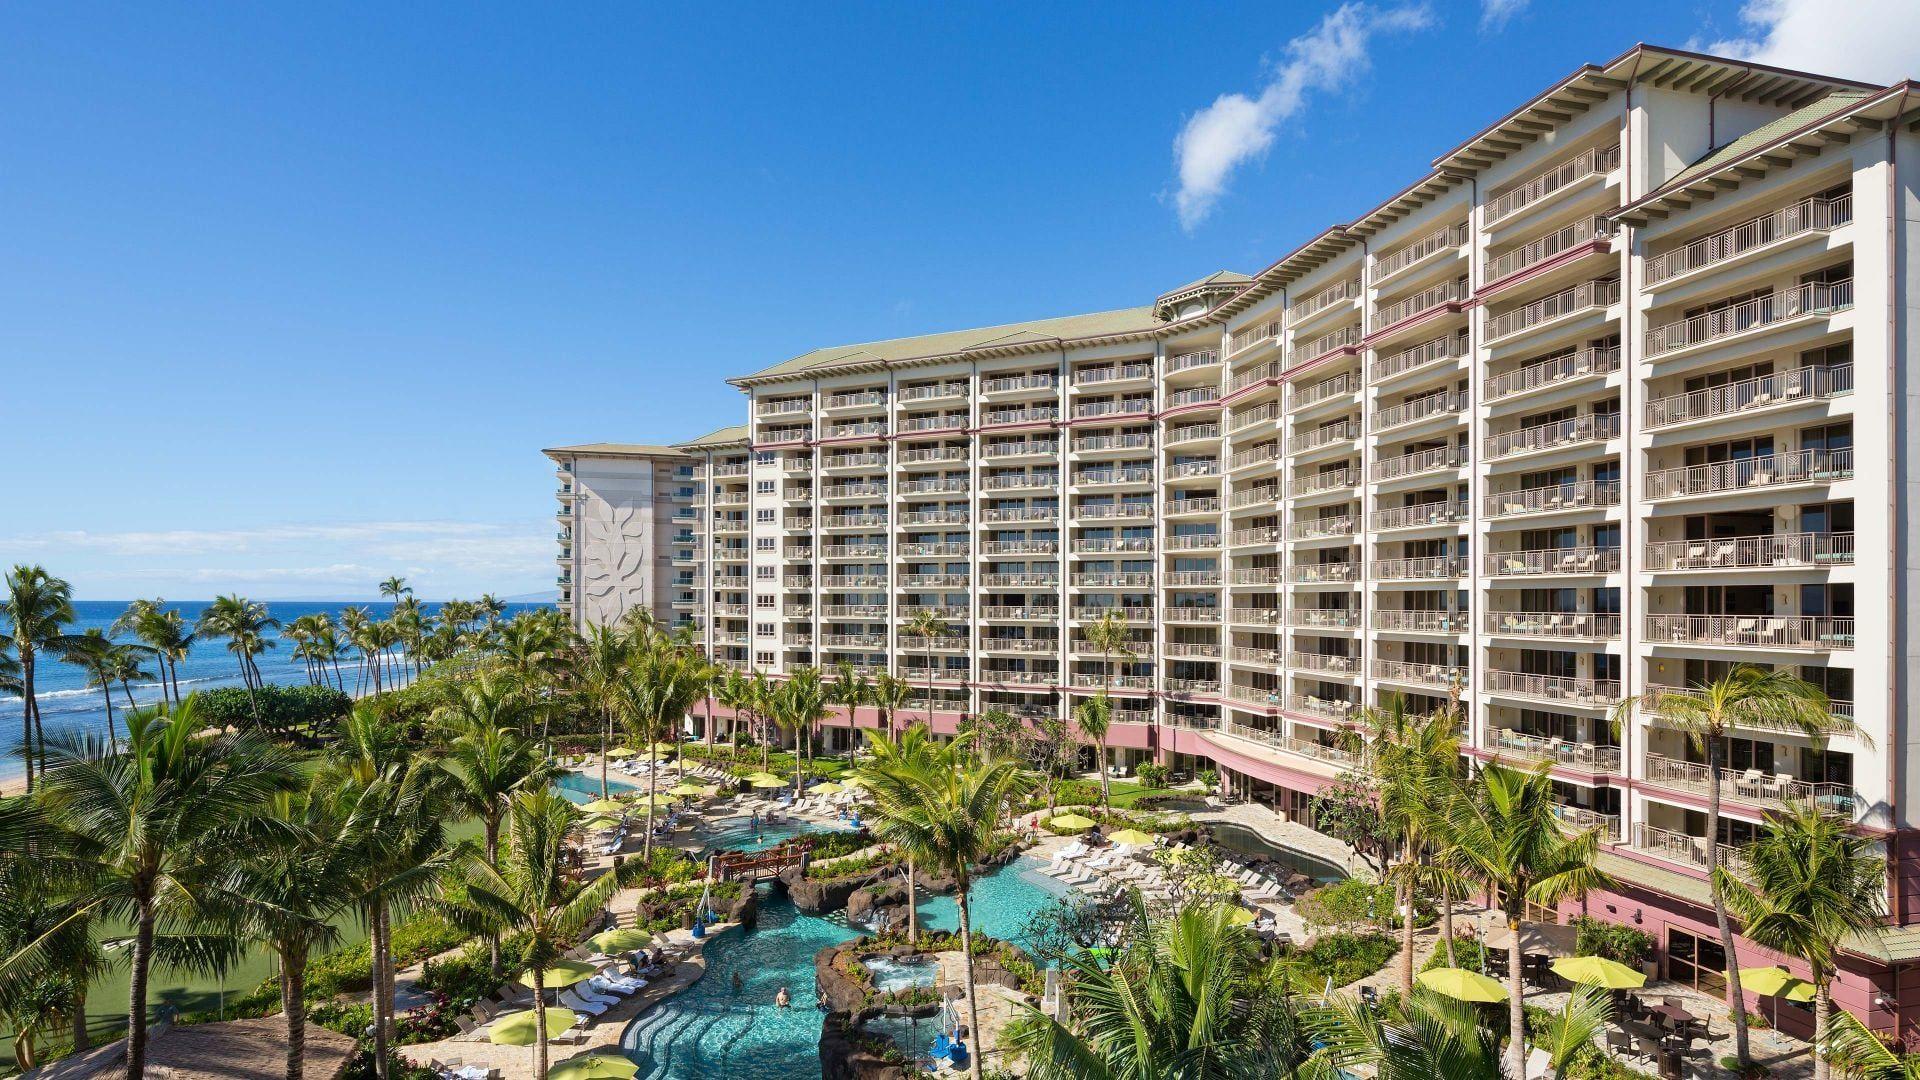 Luxury Maui Resort Near Ka'anapali Beach Residence Club Maui